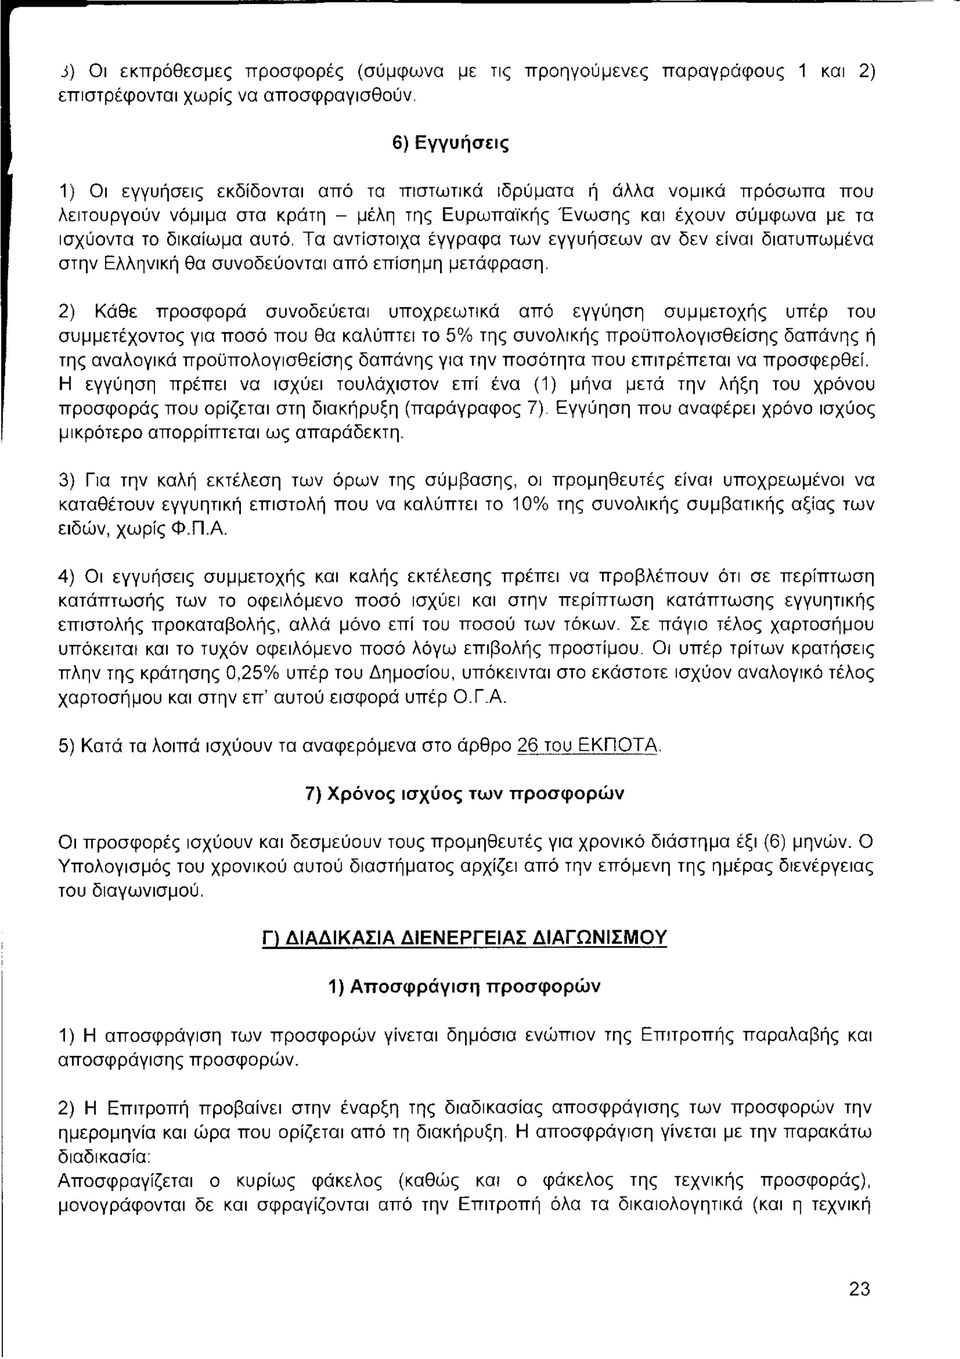 Τα αντίστοιχα έγγραφα των εγγυήσεων αν δεν είναι διατυπωμένα στην Ελληνική θα συνοδεύονται από επίσημη μετάφραση.